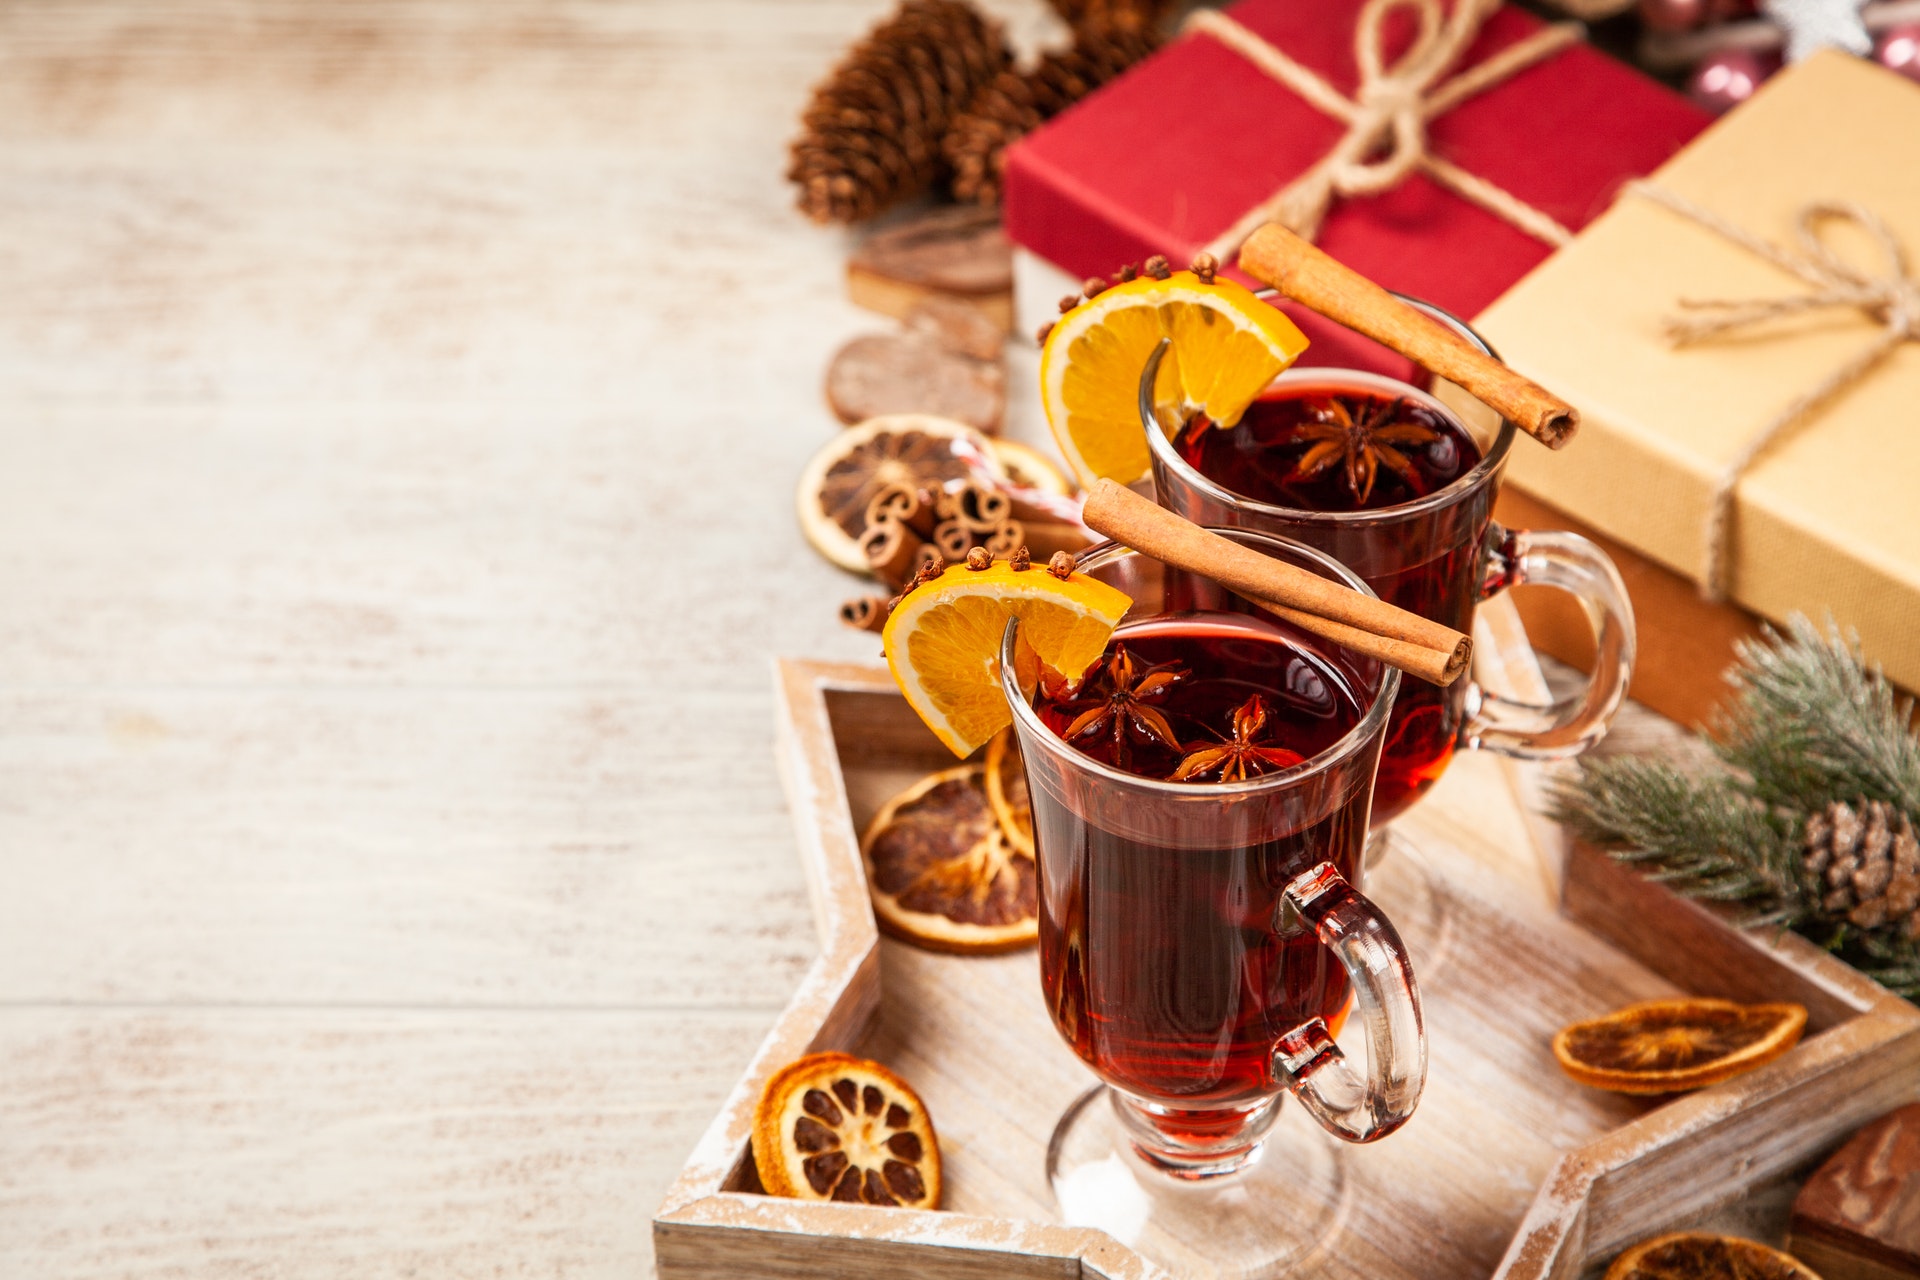 Mercatini di Natale 2021 a Castelrotto: la festa dell'Avvento tra decorazioni e vin brulè